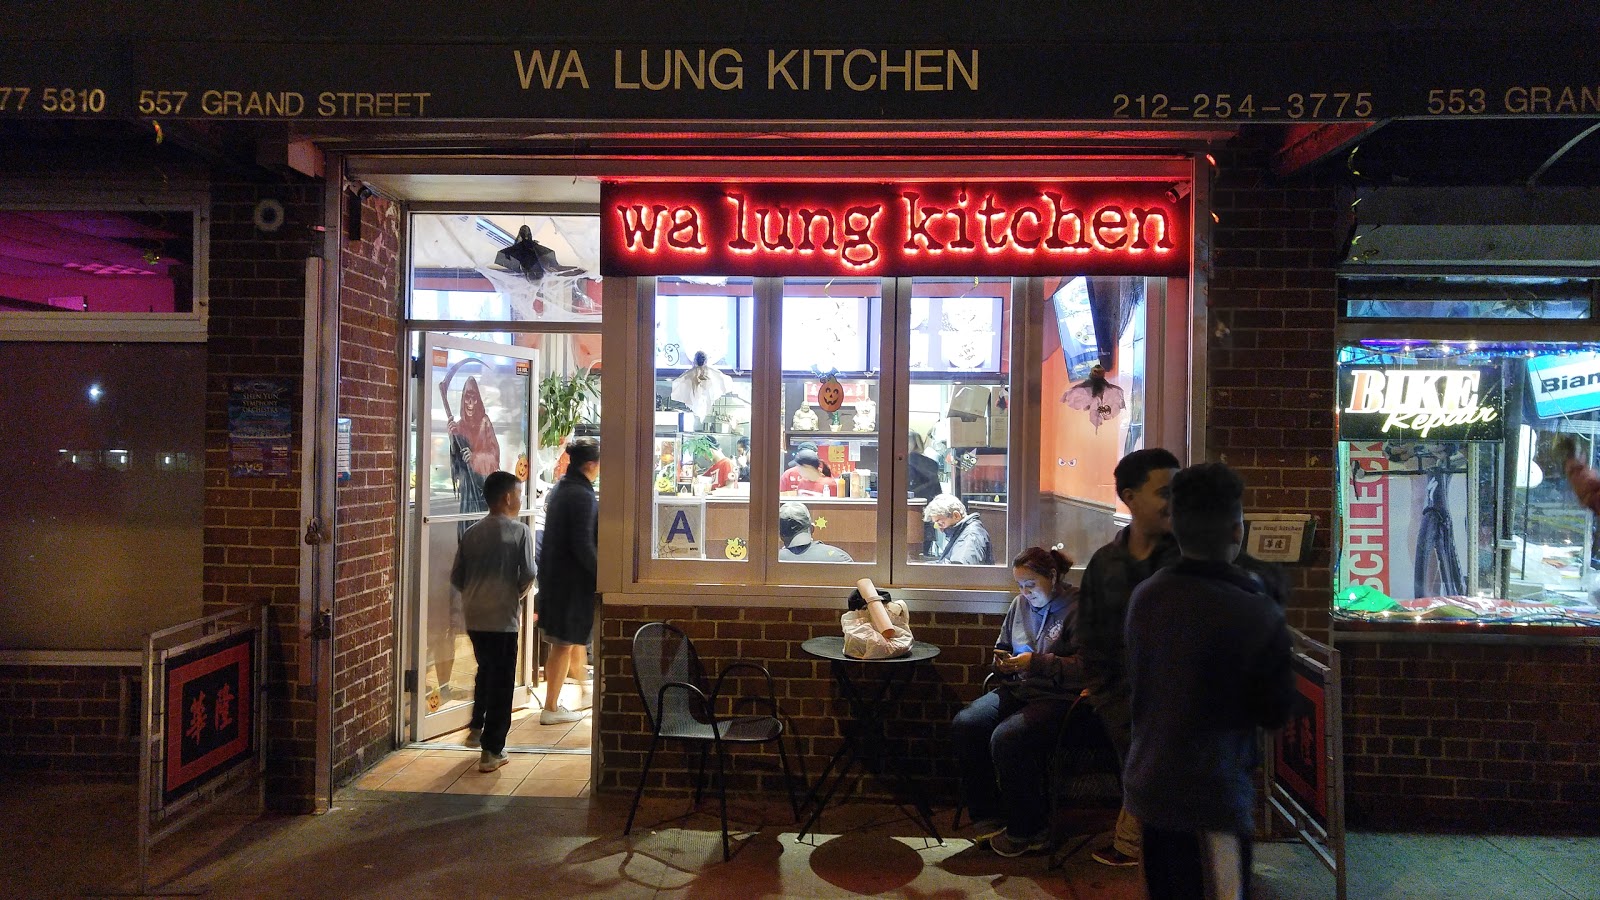 Wa Lung Kitchen Chinese restaurant in 557 Grand St, Manhattan, New York